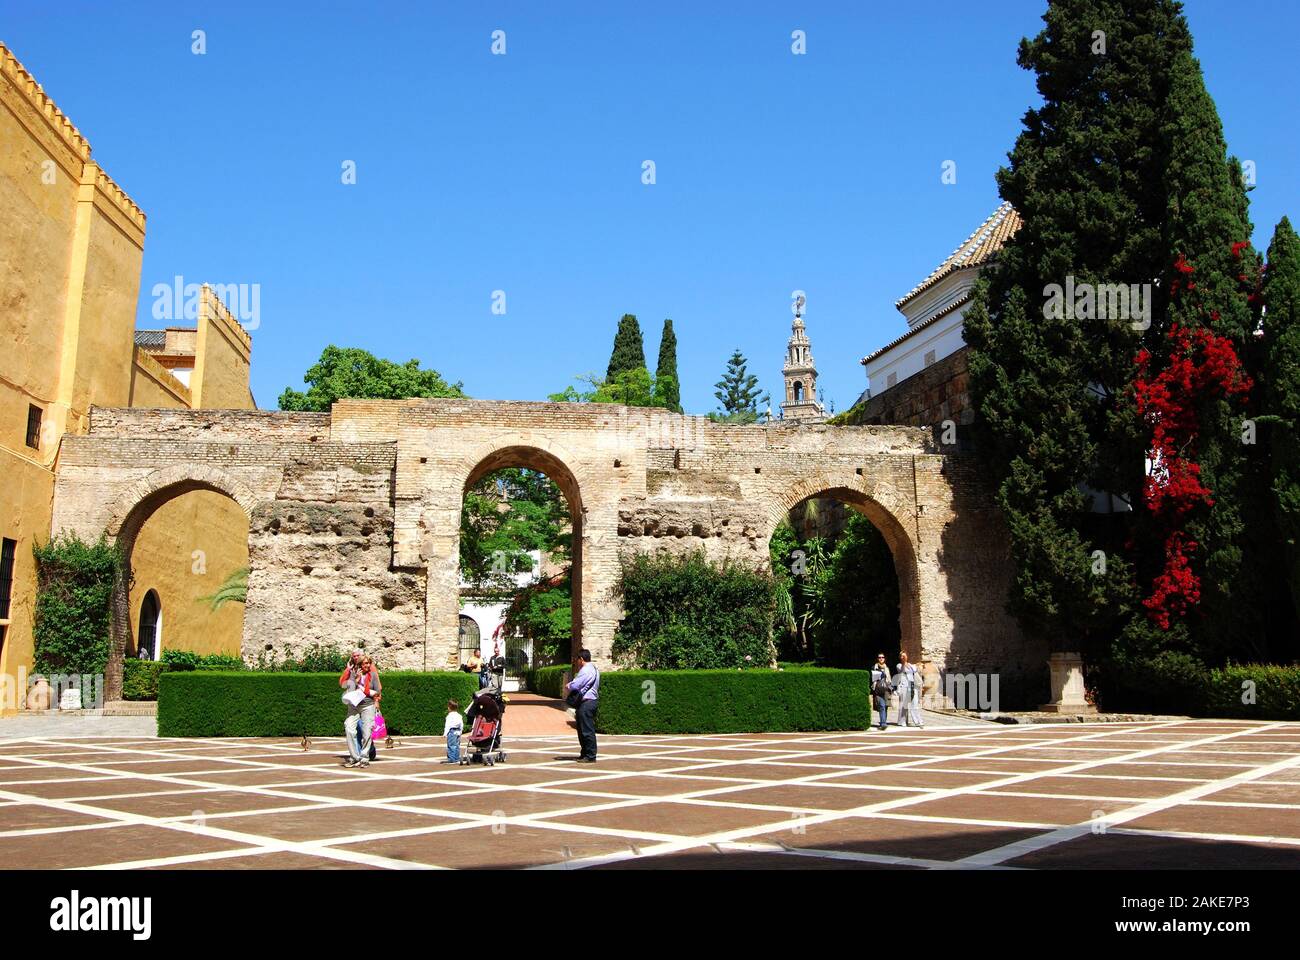 Patio de la Monteria nel castello del re con la torre Giralda verso la parte posteriore, Siviglia, provincia di Siviglia, in Andalusia, Spagna. Foto Stock